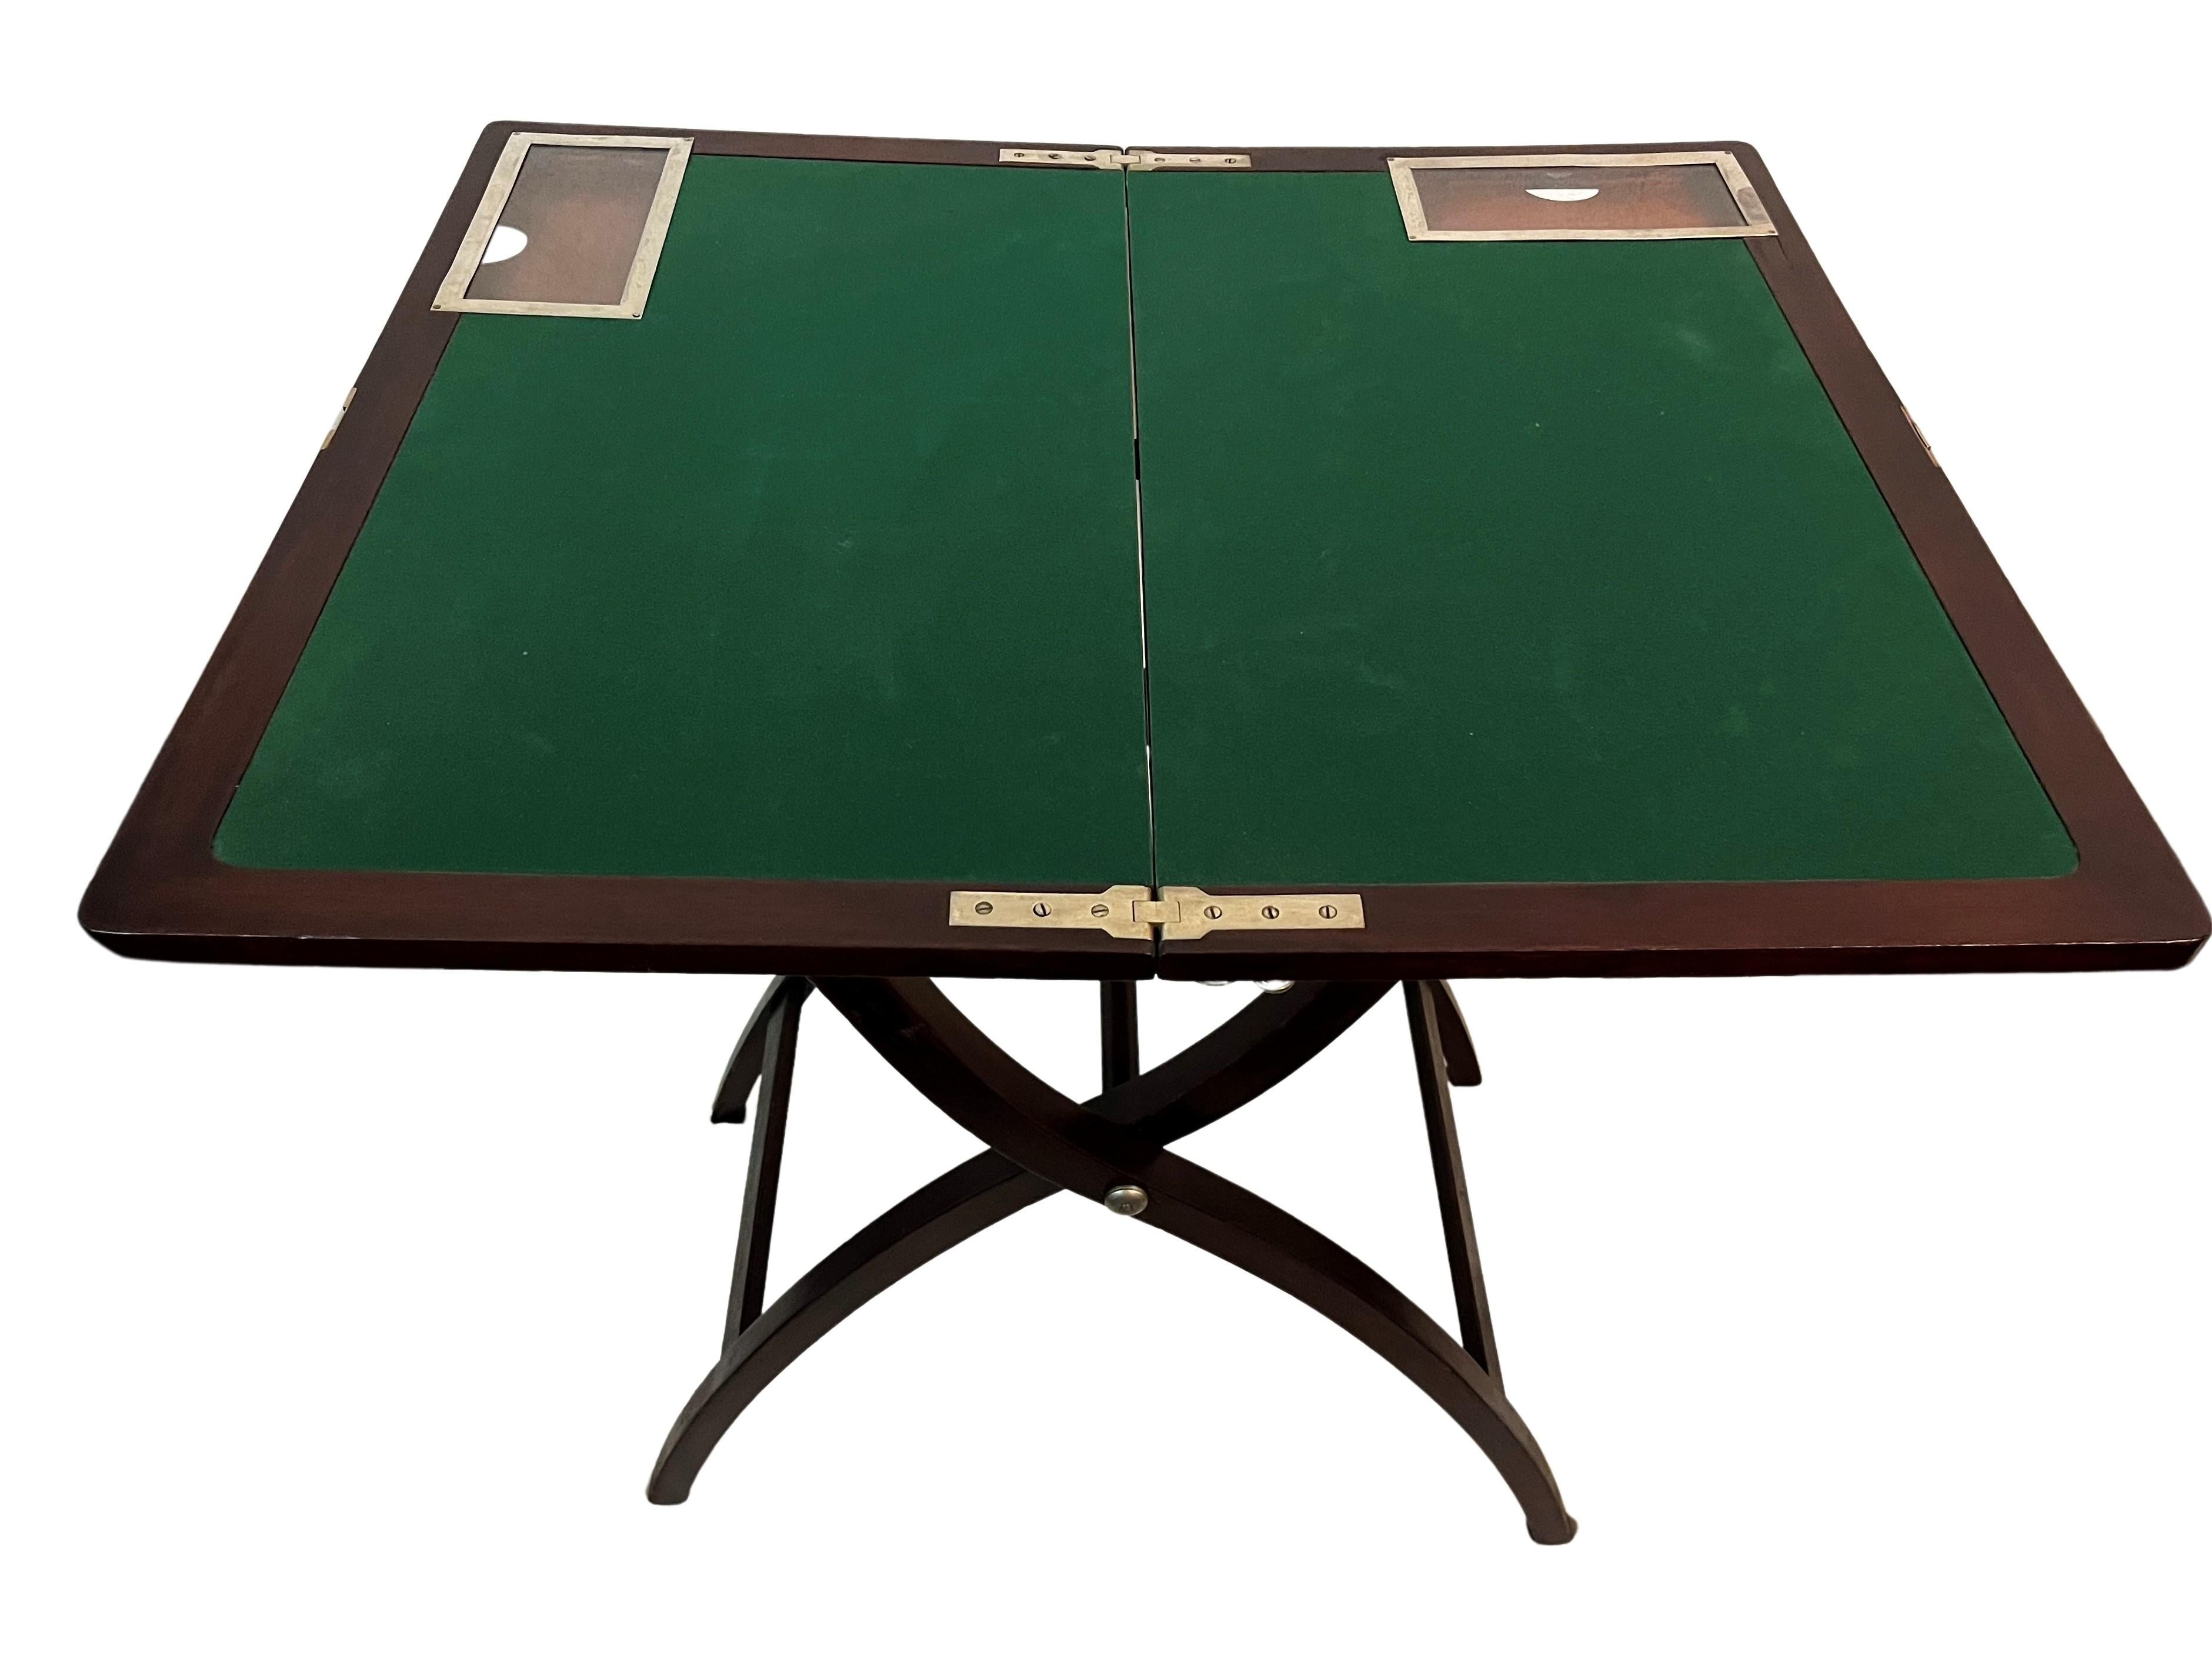 Sehr seltener Spieltisch mit einem faszinierend ausgeführten Klappmechanismus. Dieses Objekt wurde in England um 1920 in der Zeit des Art déco hergestellt.

Nach dem Aufklappen erscheint eine Spielfläche, die mit grünem Filz ausgekleidet ist. Es